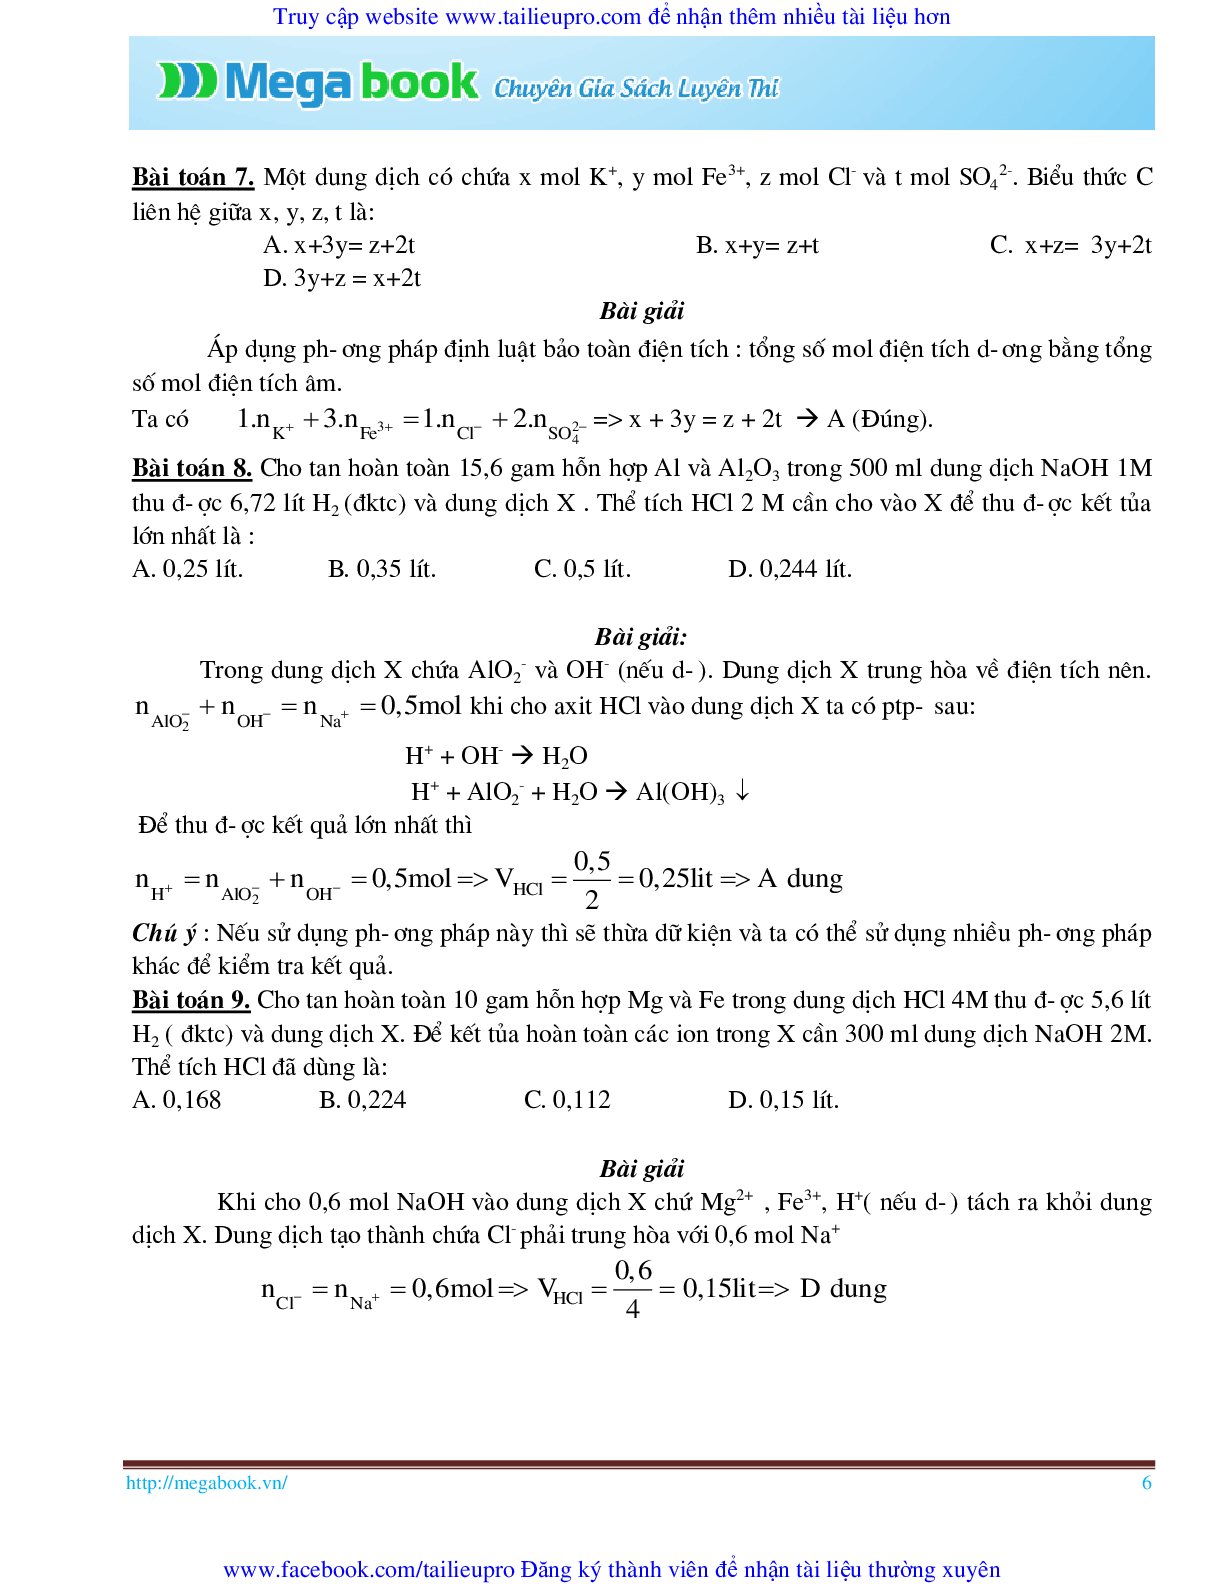 10 Bí quyết chinh phục phương pháp giải toán chủ chốt môn Hóa học ôn thi THPT Quốc Gia (trang 6)